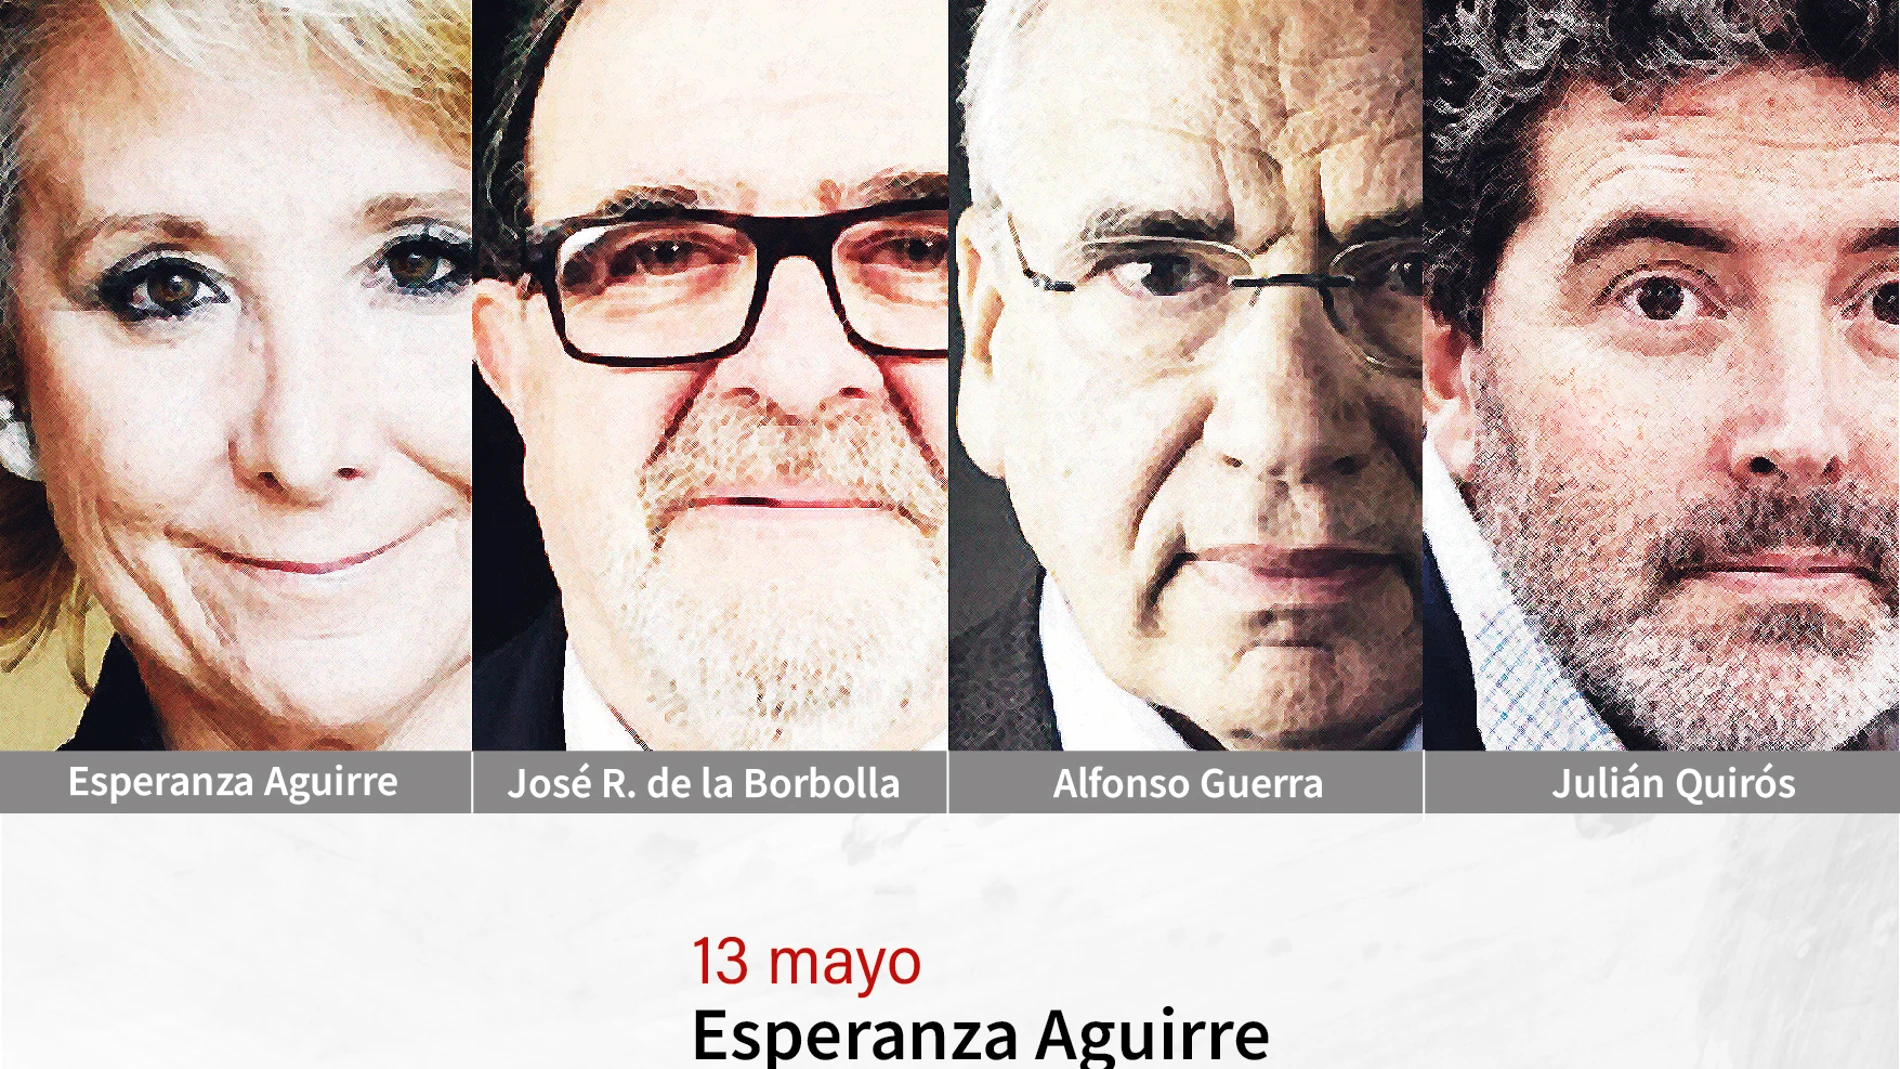 Cartel IX Foro España a Debate de Tomares